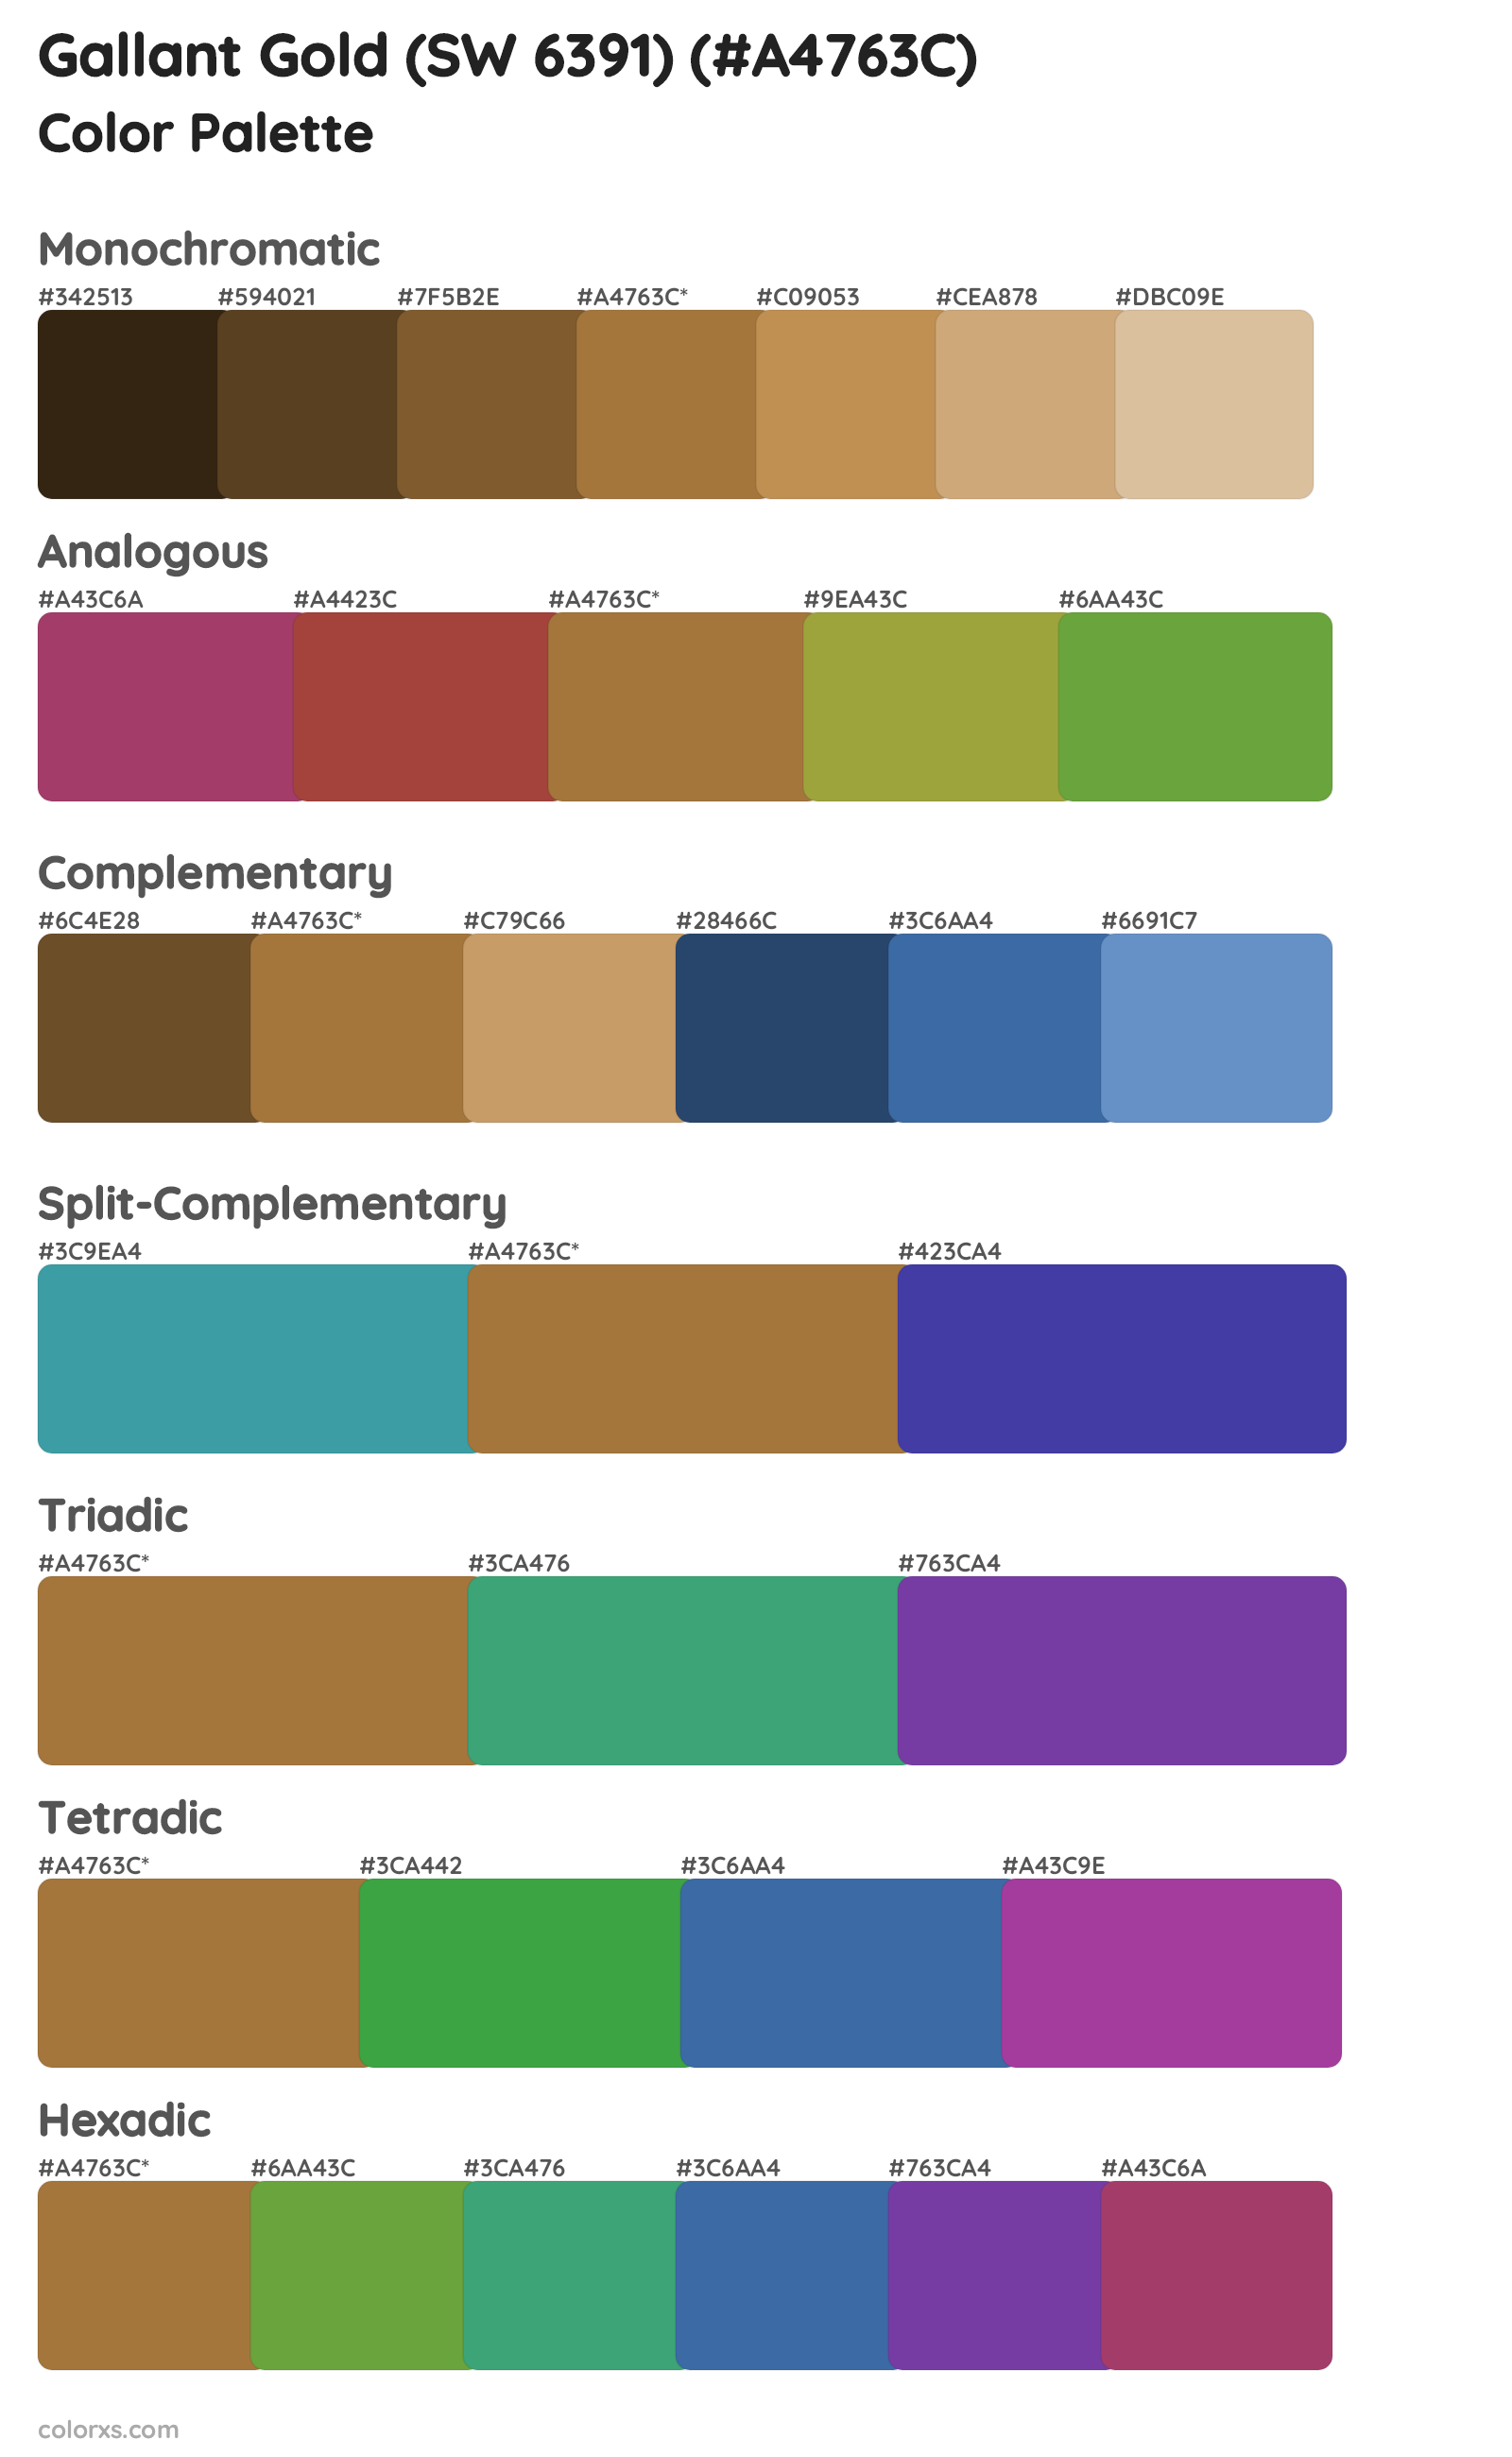 Gallant Gold (SW 6391) Color Scheme Palettes